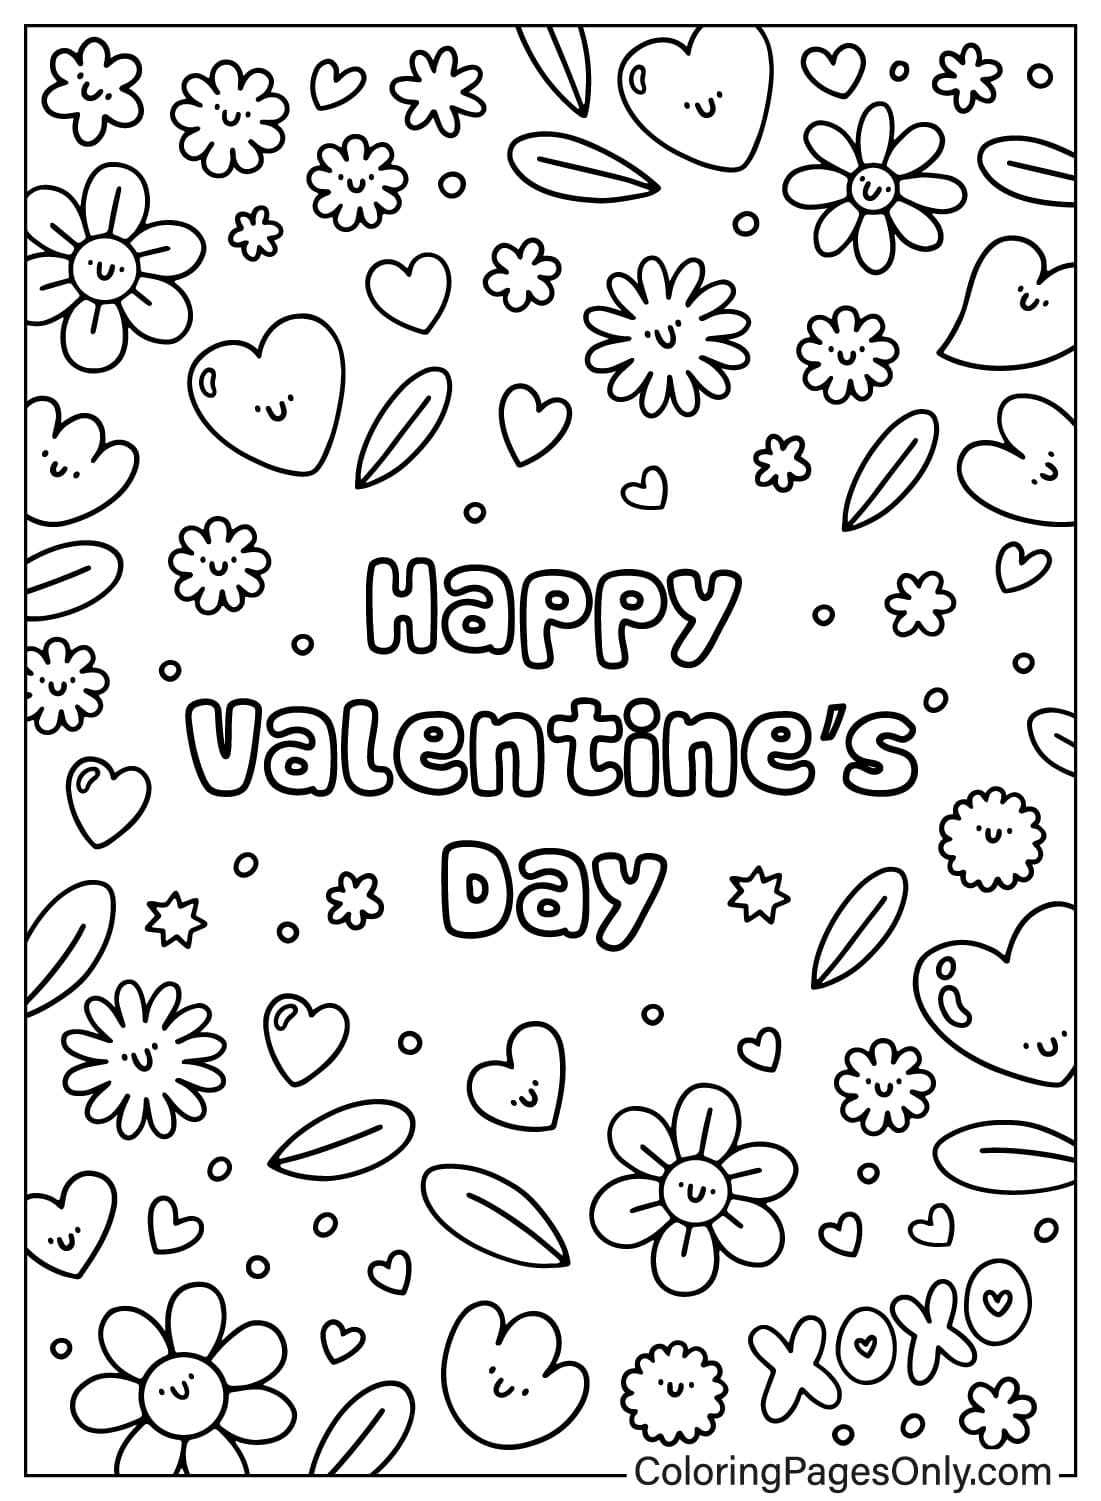 Tarjetas del día de San Valentín Página para colorear gratis de Tarjetas del día de San Valentín